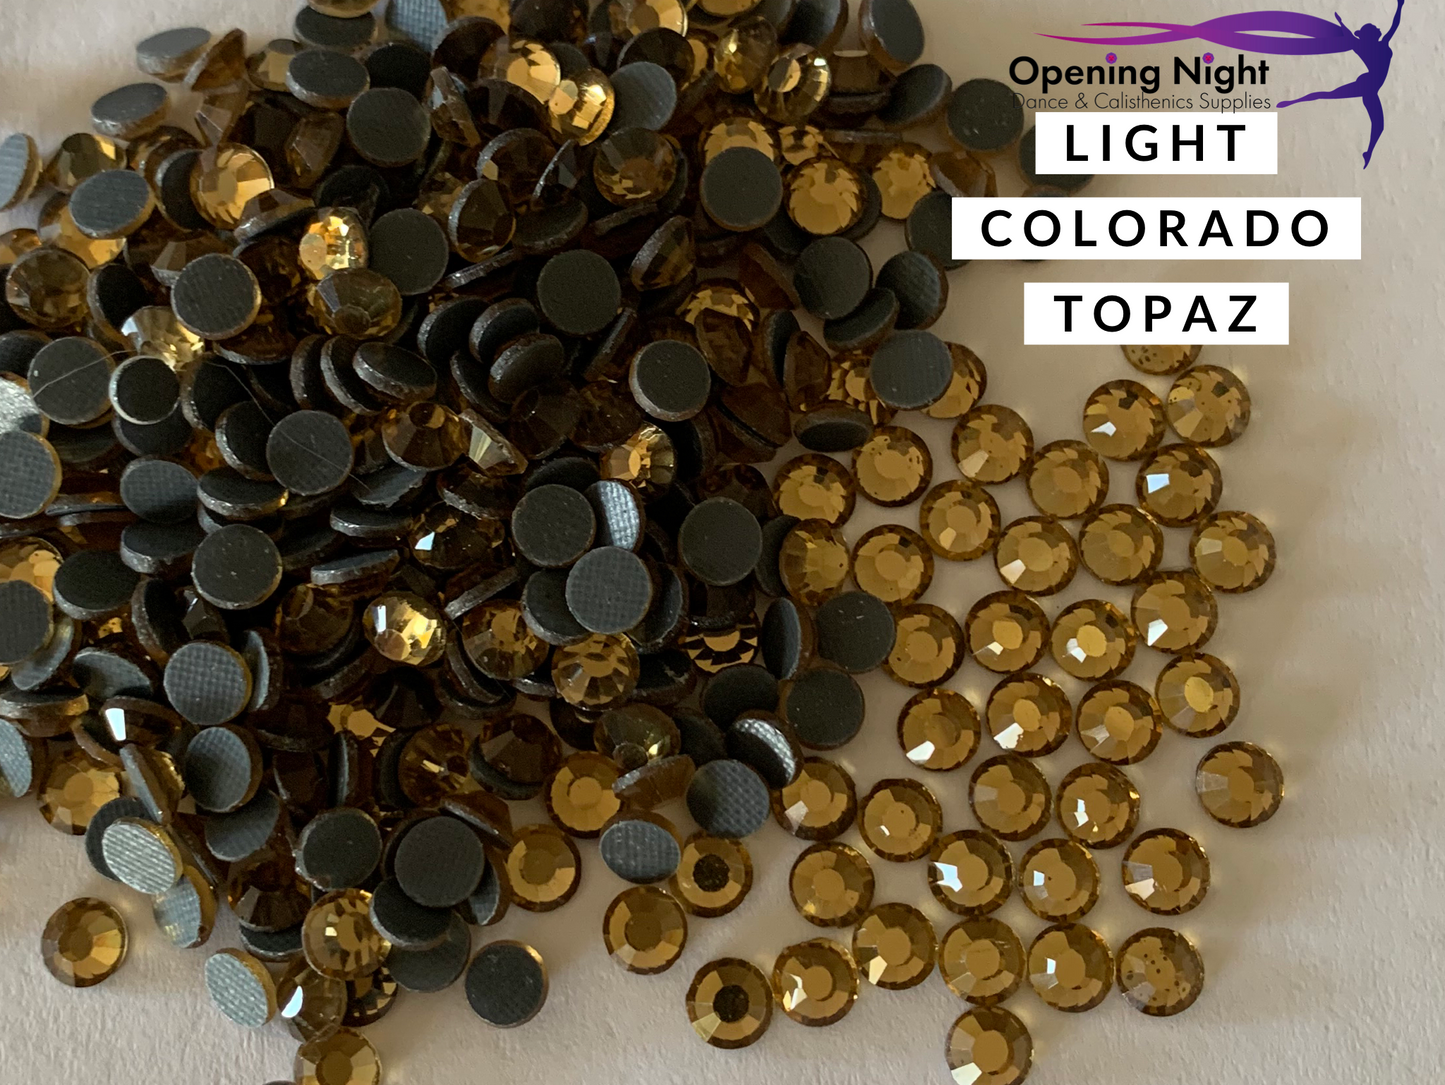 Light Colorado Topaz - DMC Hotfix Diamante Crystals